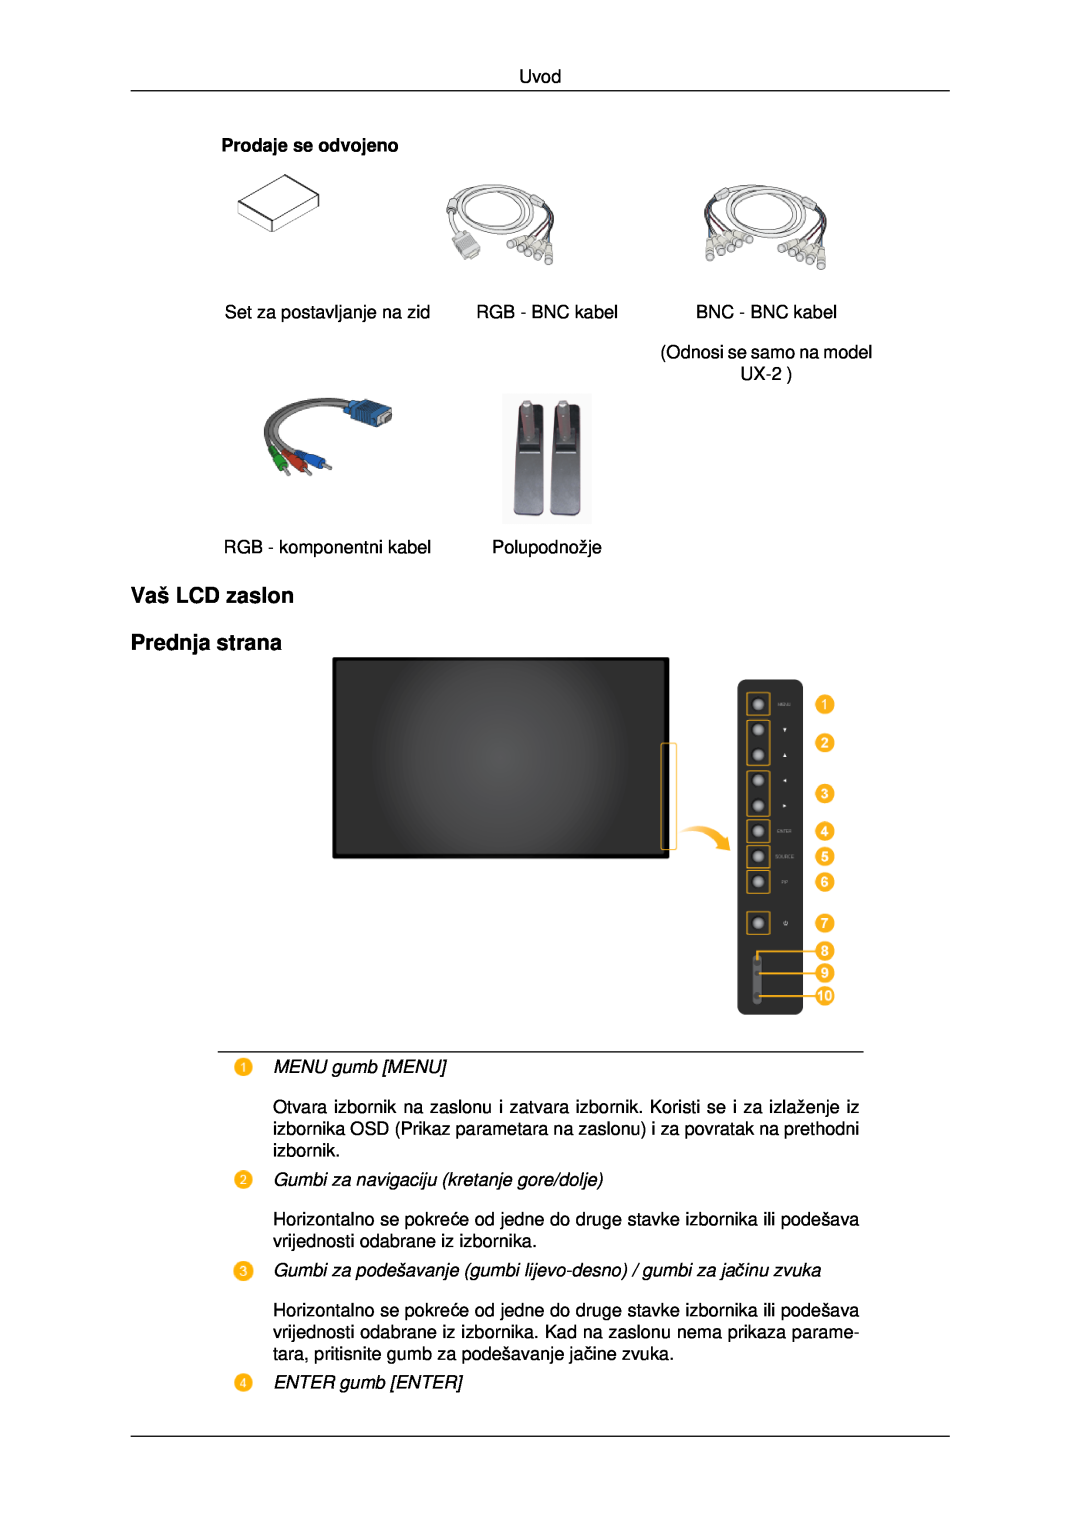 Samsung LH46MSTLBB/EN manual Vaš LCD zaslon Prednja strana, MENU gumb MENU, Gumbi za navigaciju kretanje gore/dolje 